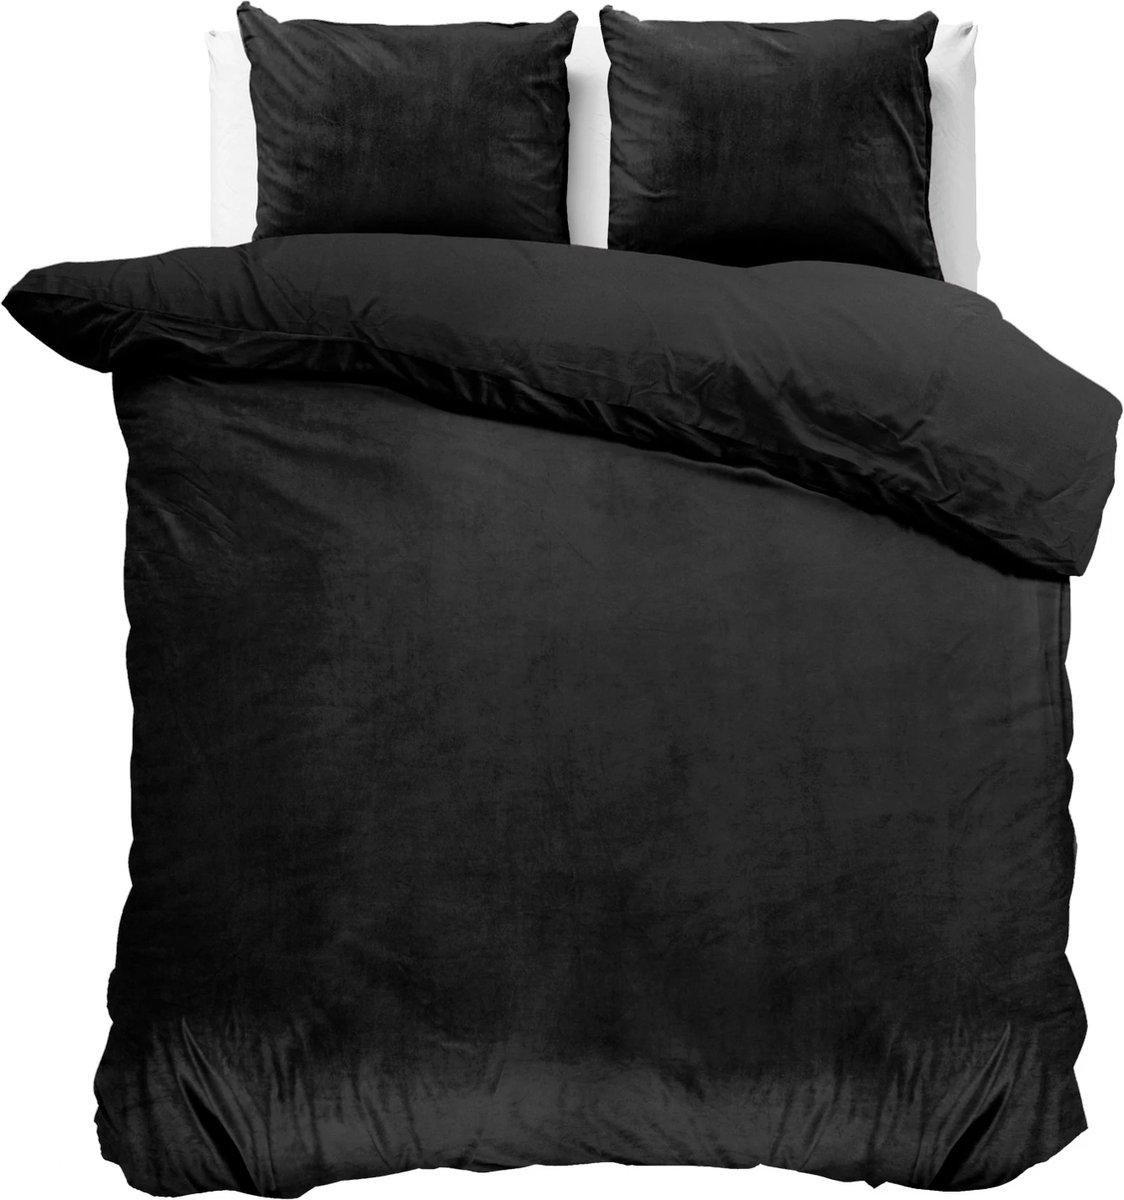 Fluweel zachte velvet dekbedovertrek uni zwart - 200x200/220 (tweepersoons) - super fijn slapen - stijlvolle uitstraling - luxe kwaliteit - met handige drukknopen